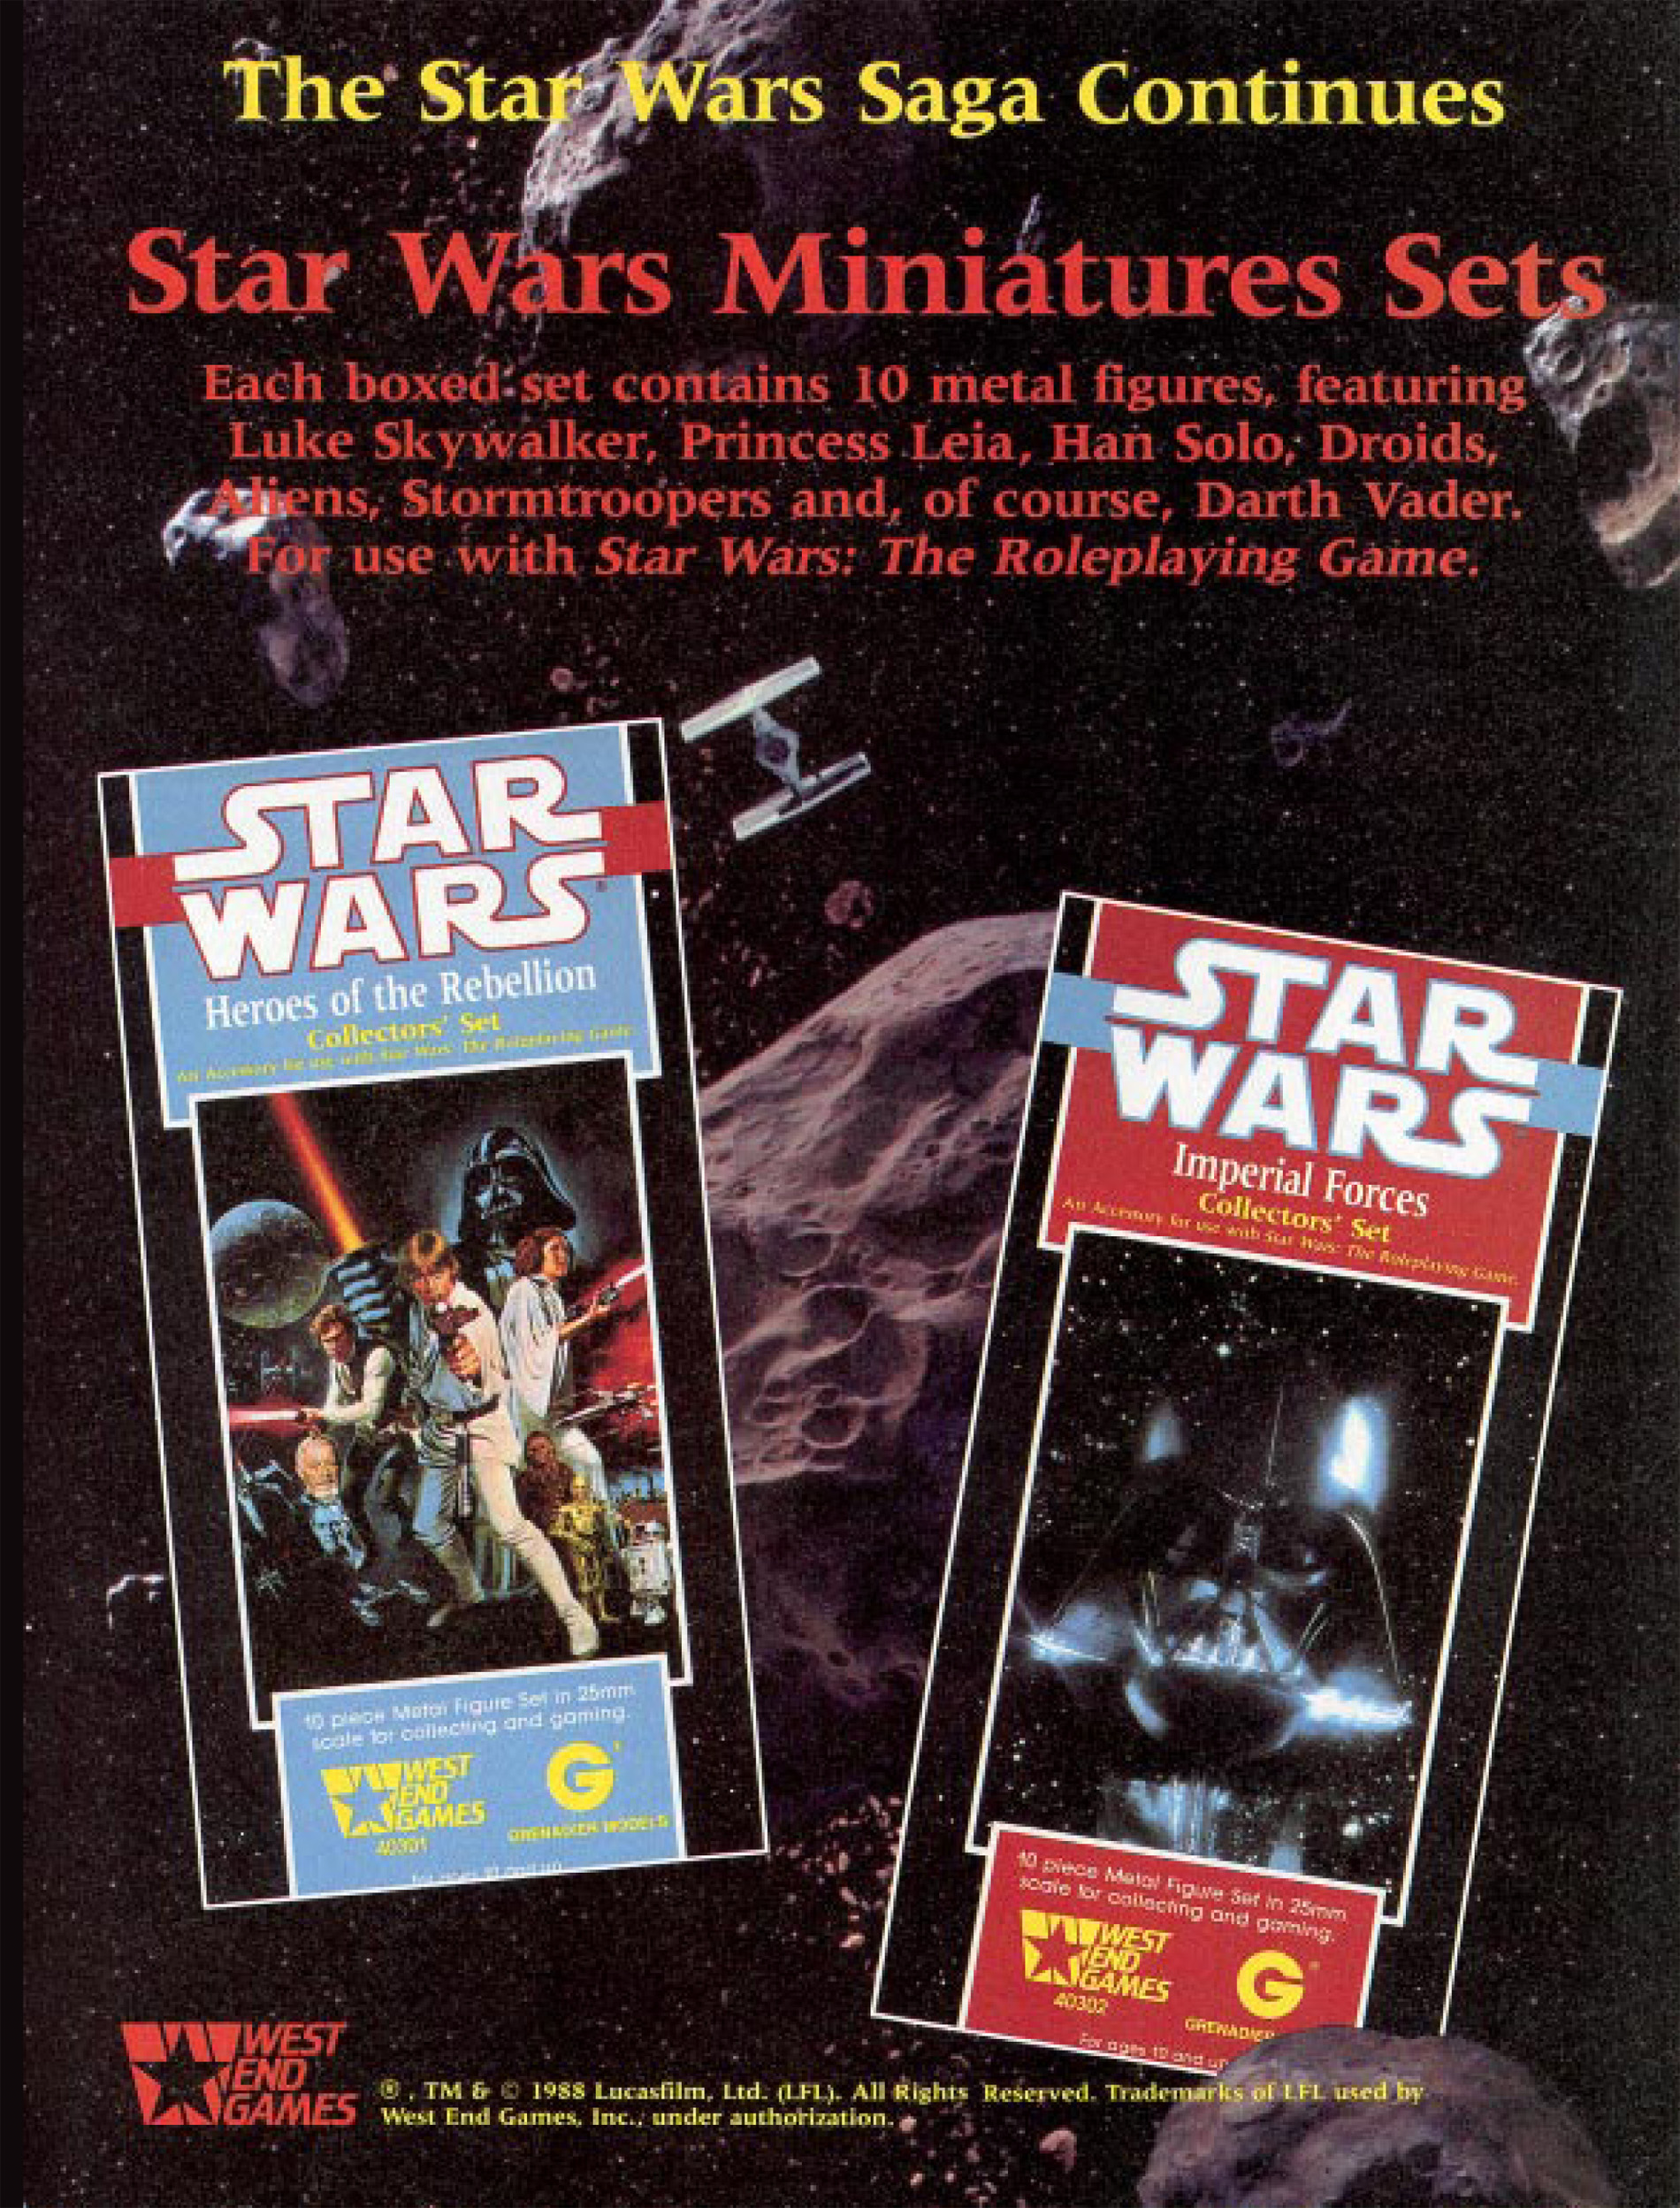 West End Games' Star Wars RPG in 1988 – BattleGrip